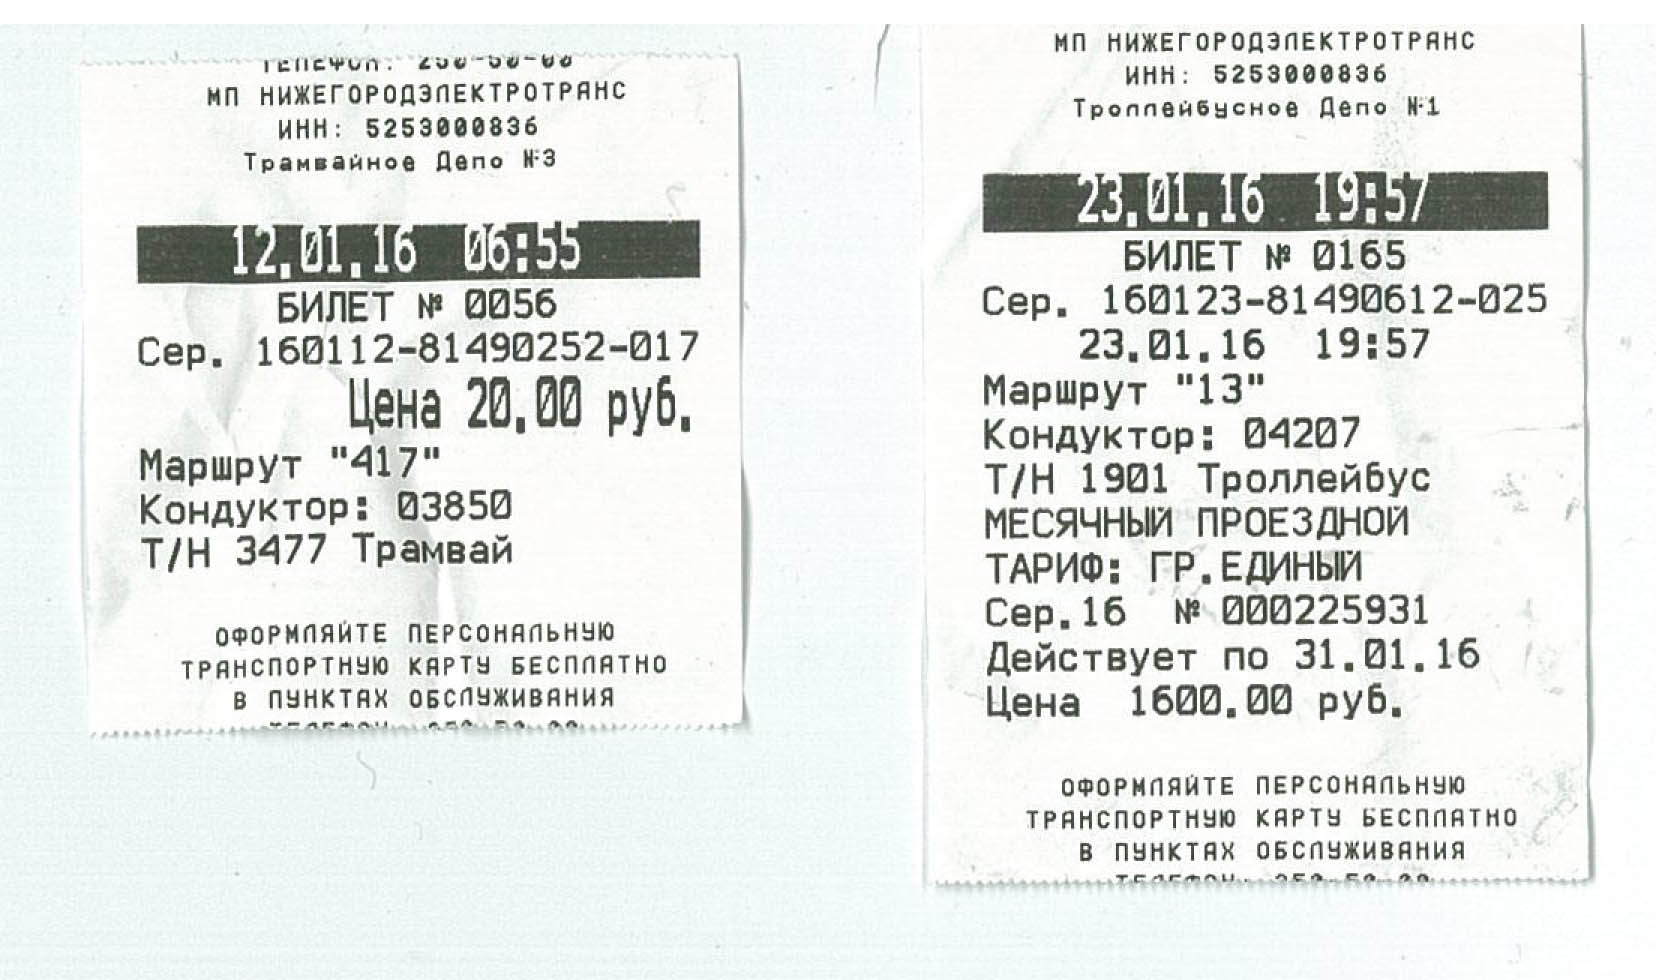 Разовый билет по ТК Нижнего Новгорода